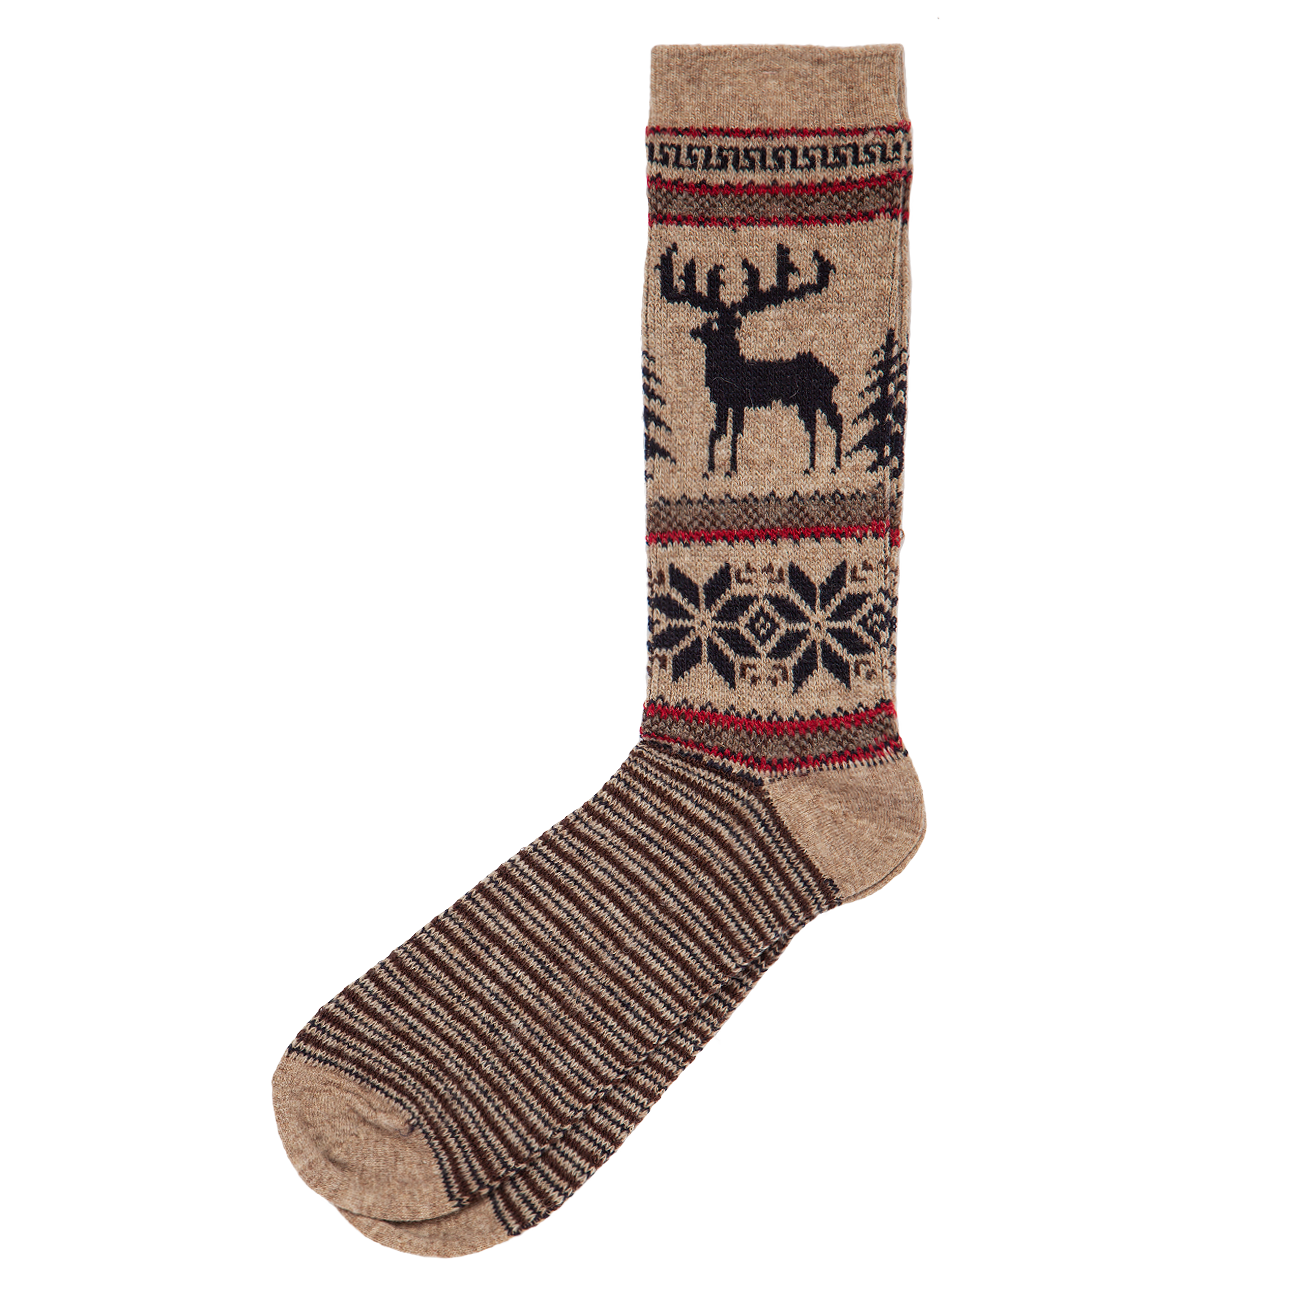 Wool Blend Deer Sock - Brown